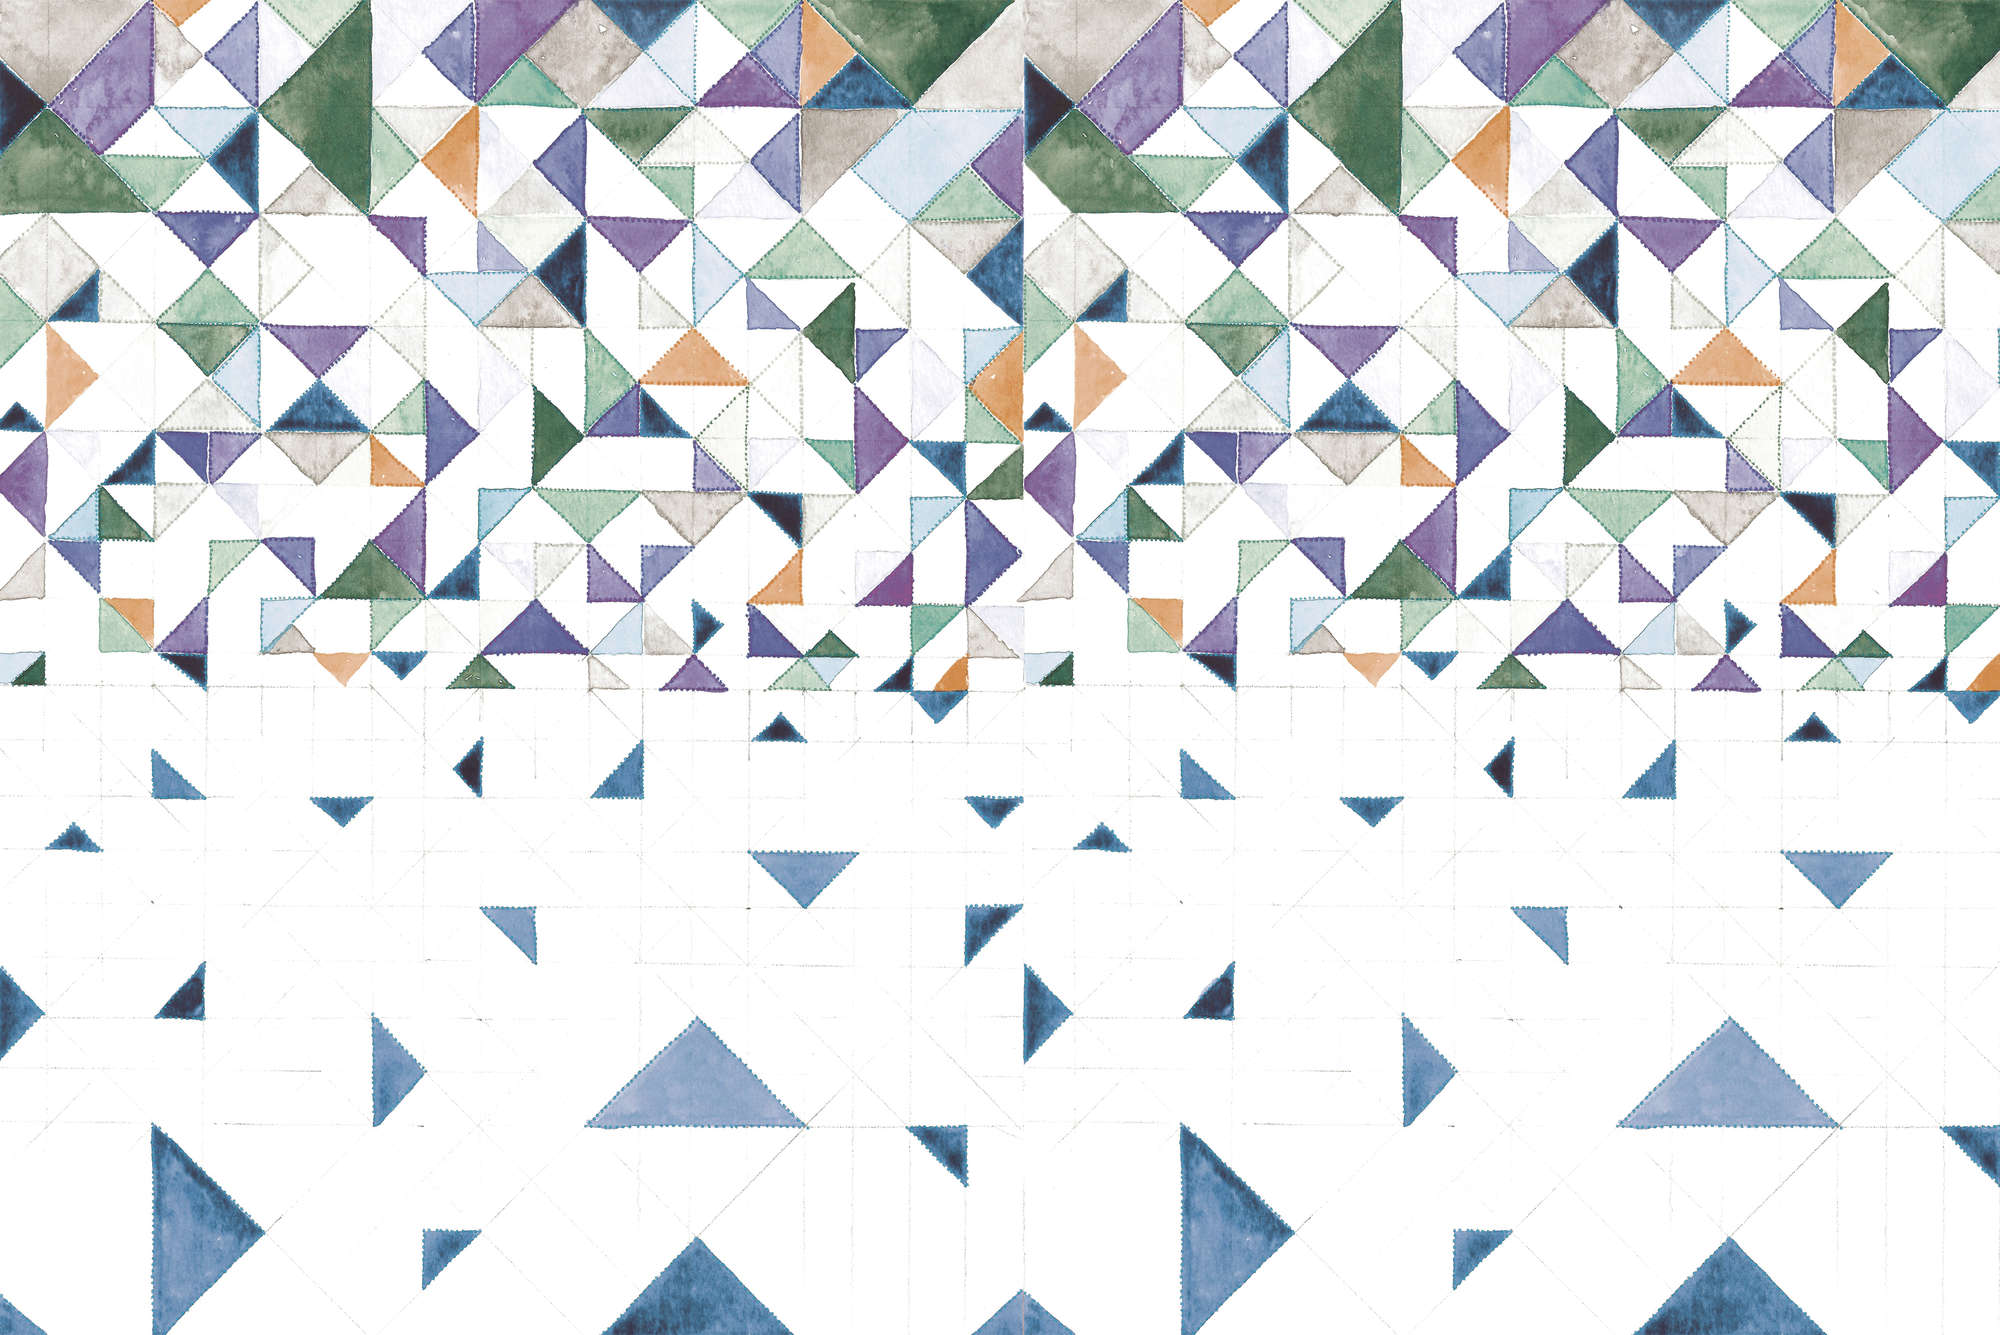             Papel pintado gráfico con diseño de triángulos en tela no tejida lisa de alta calidad
        